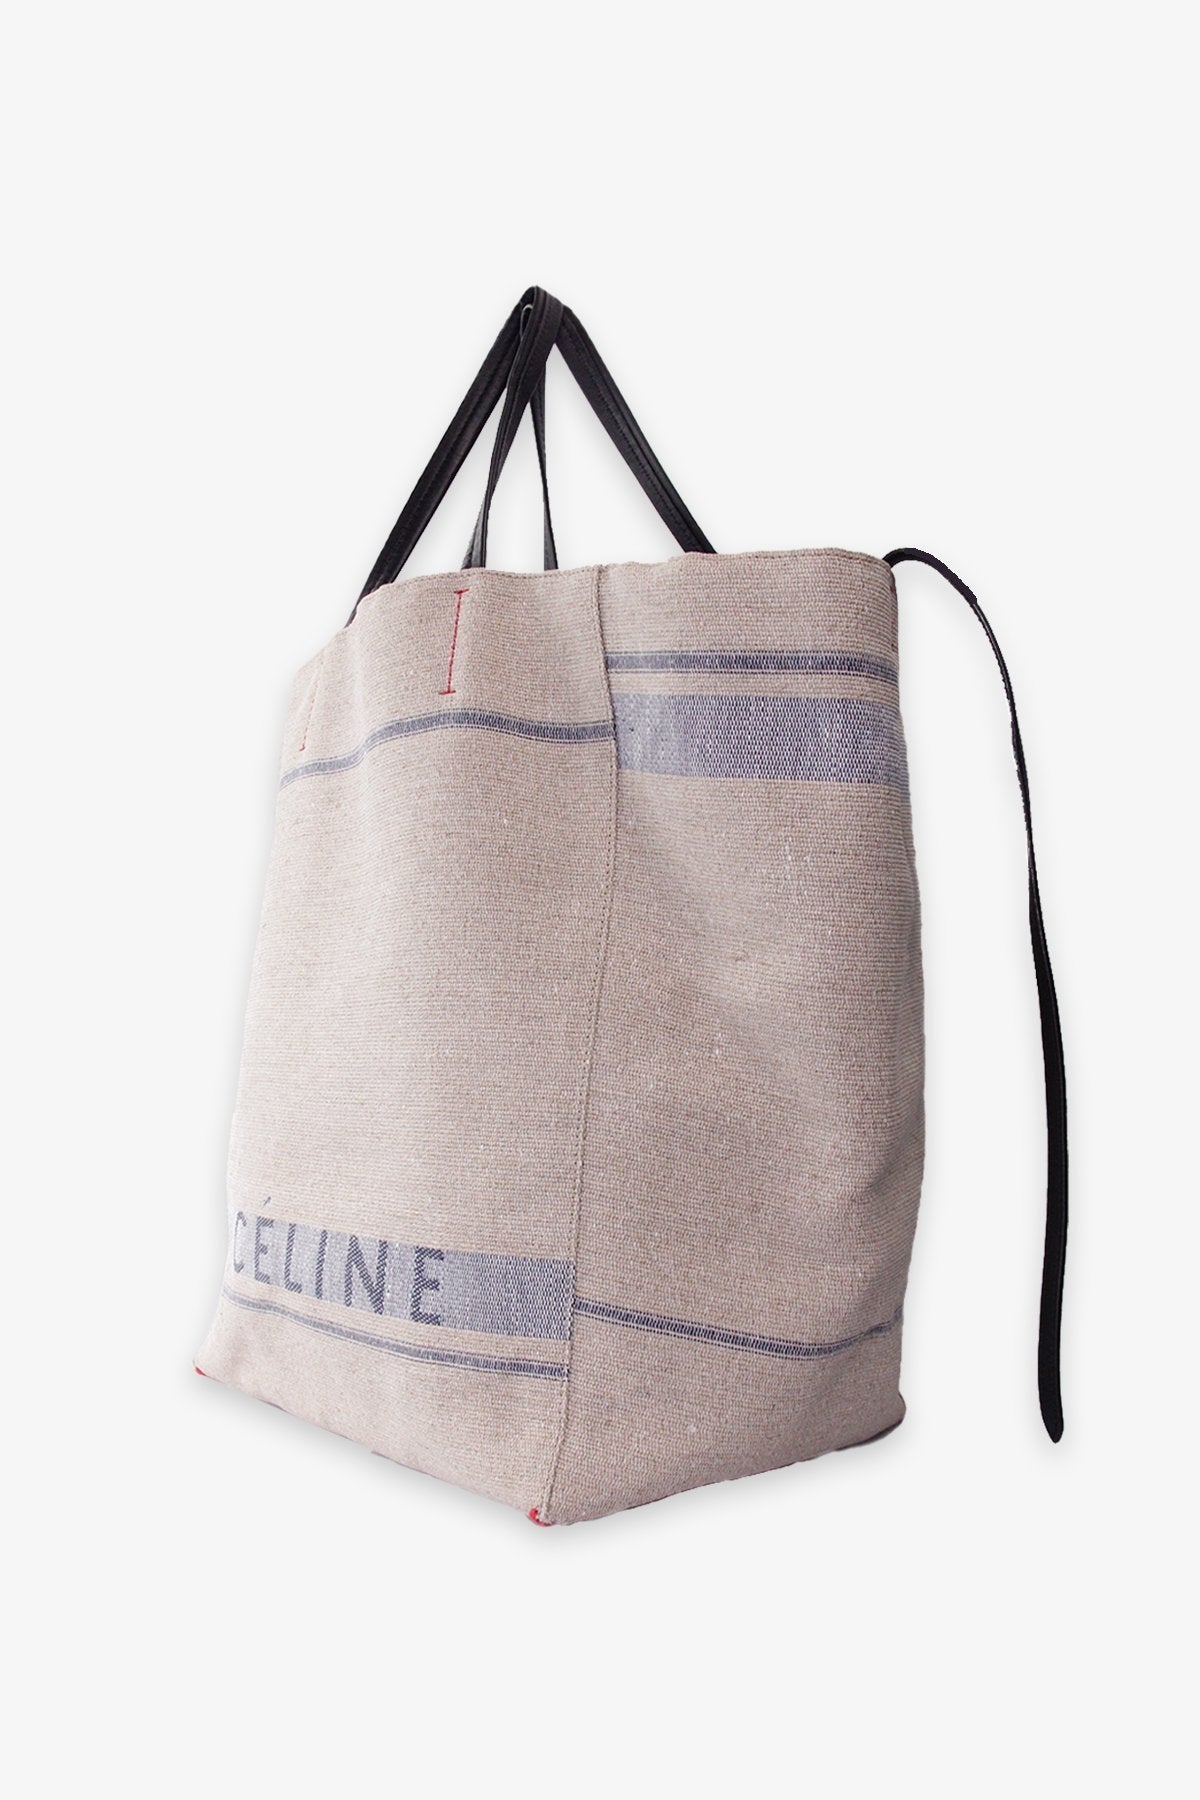 Celine Beige Canvas Tote Bag - shop-olivia.com